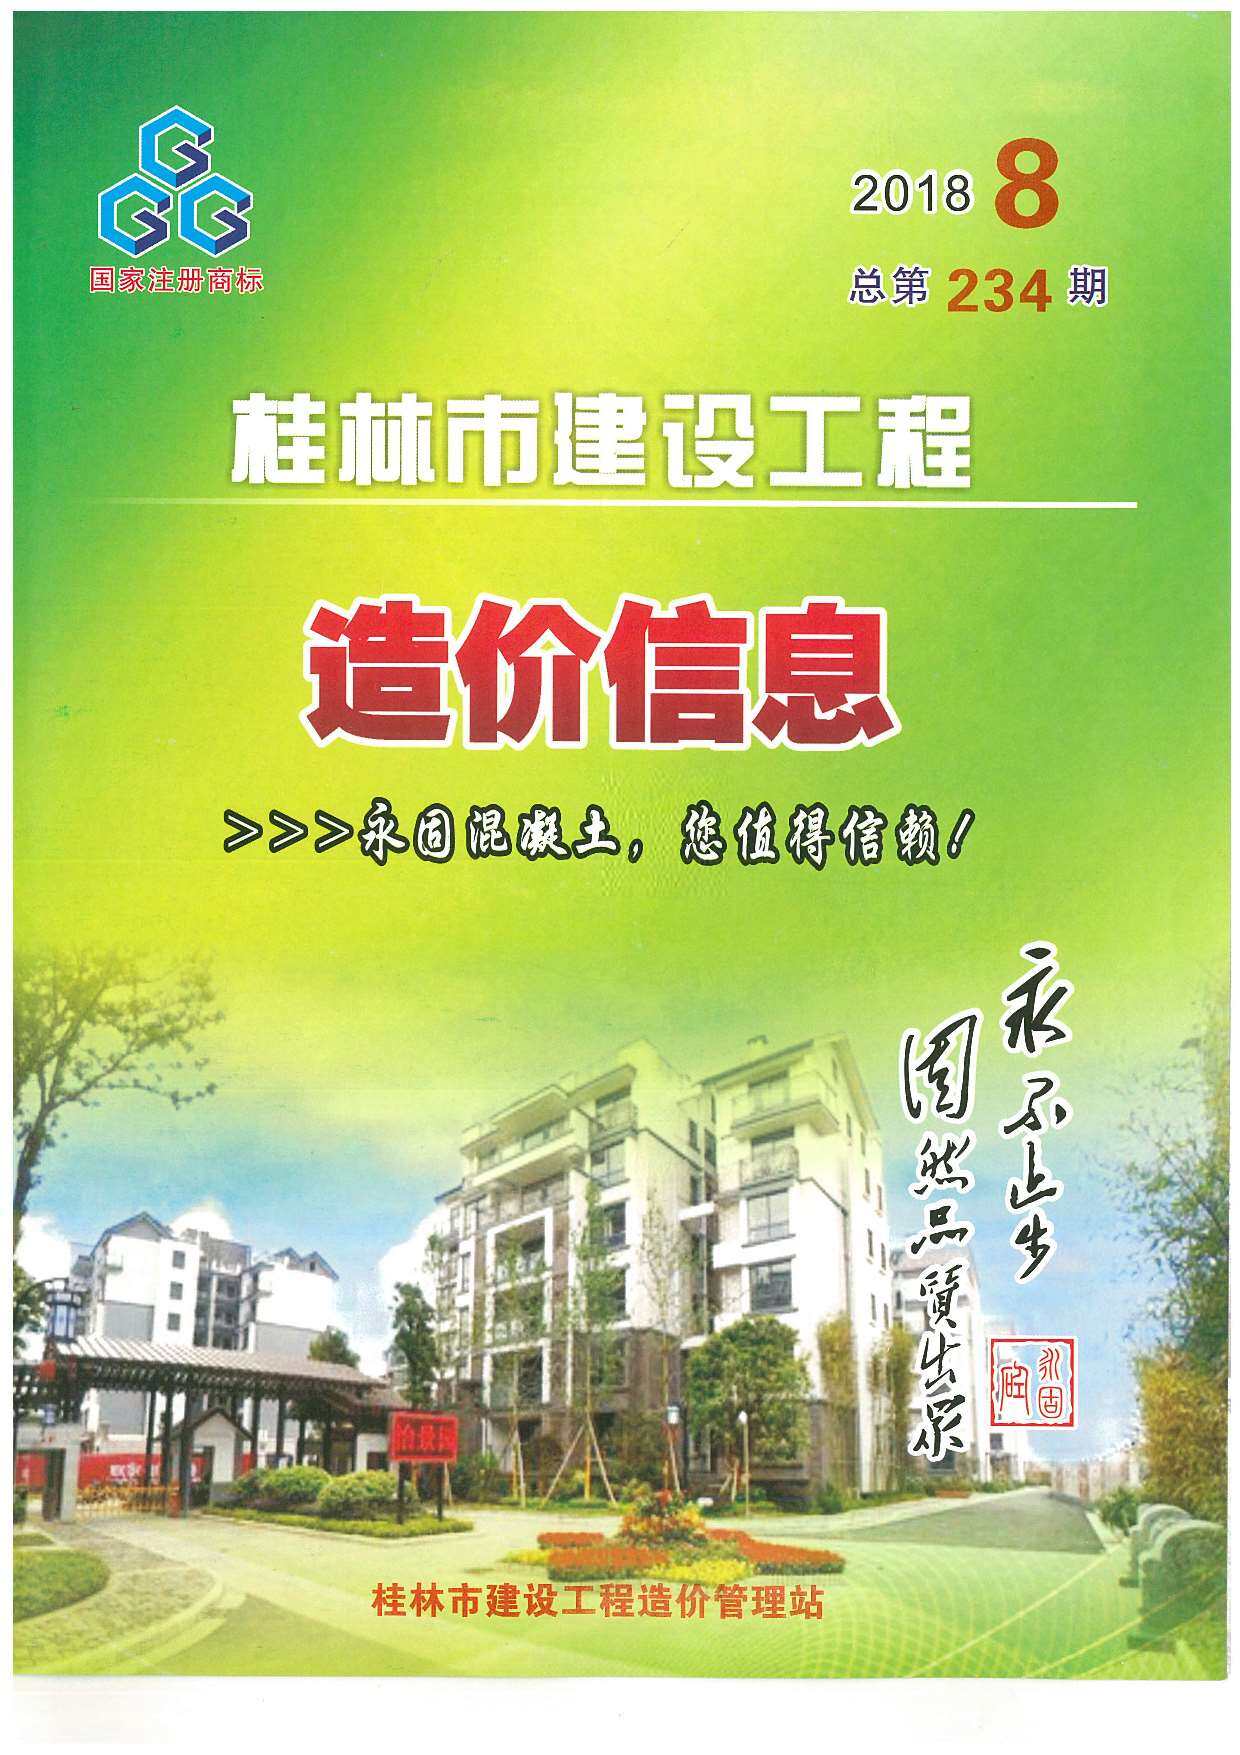 桂林市2018年8月工程造价信息期刊